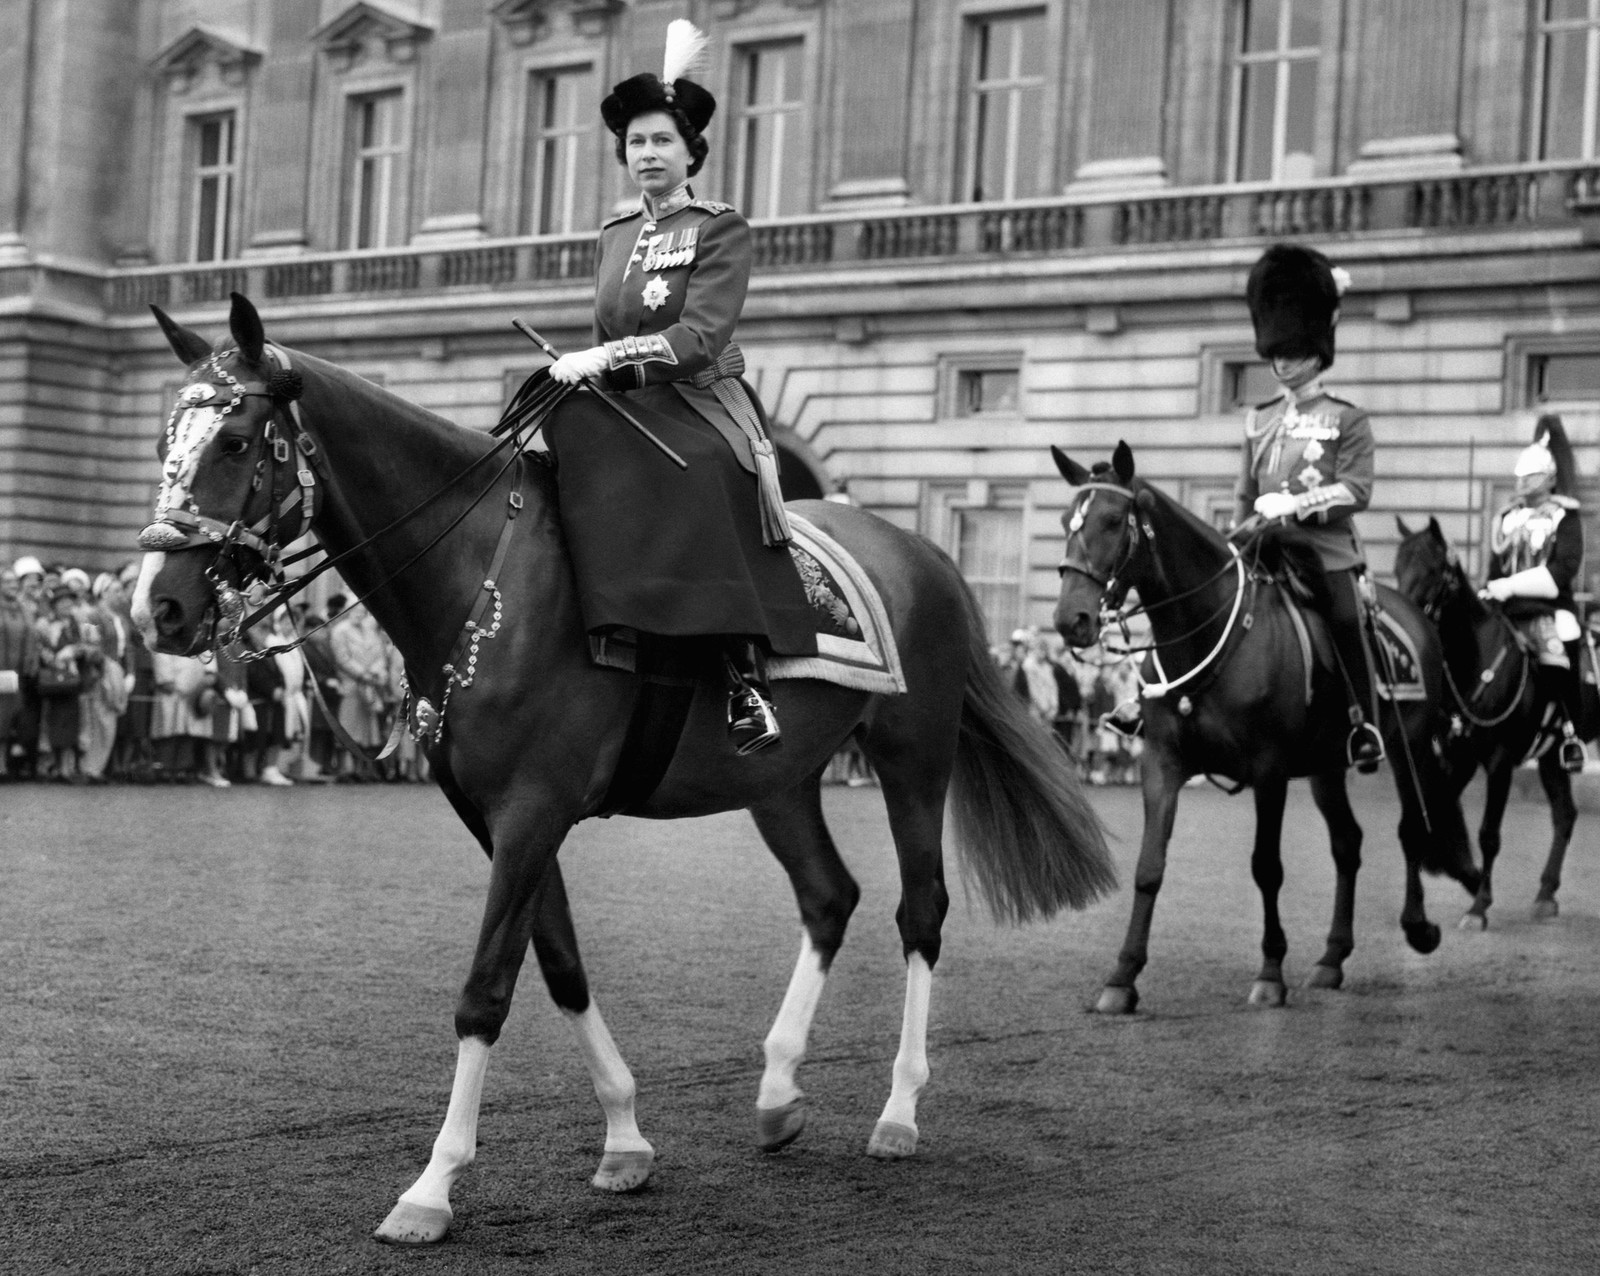 Em 1960, saindo do Palácio de Buckingham Palace para uma cerimônia equestre. — Foto: AP Photo, File